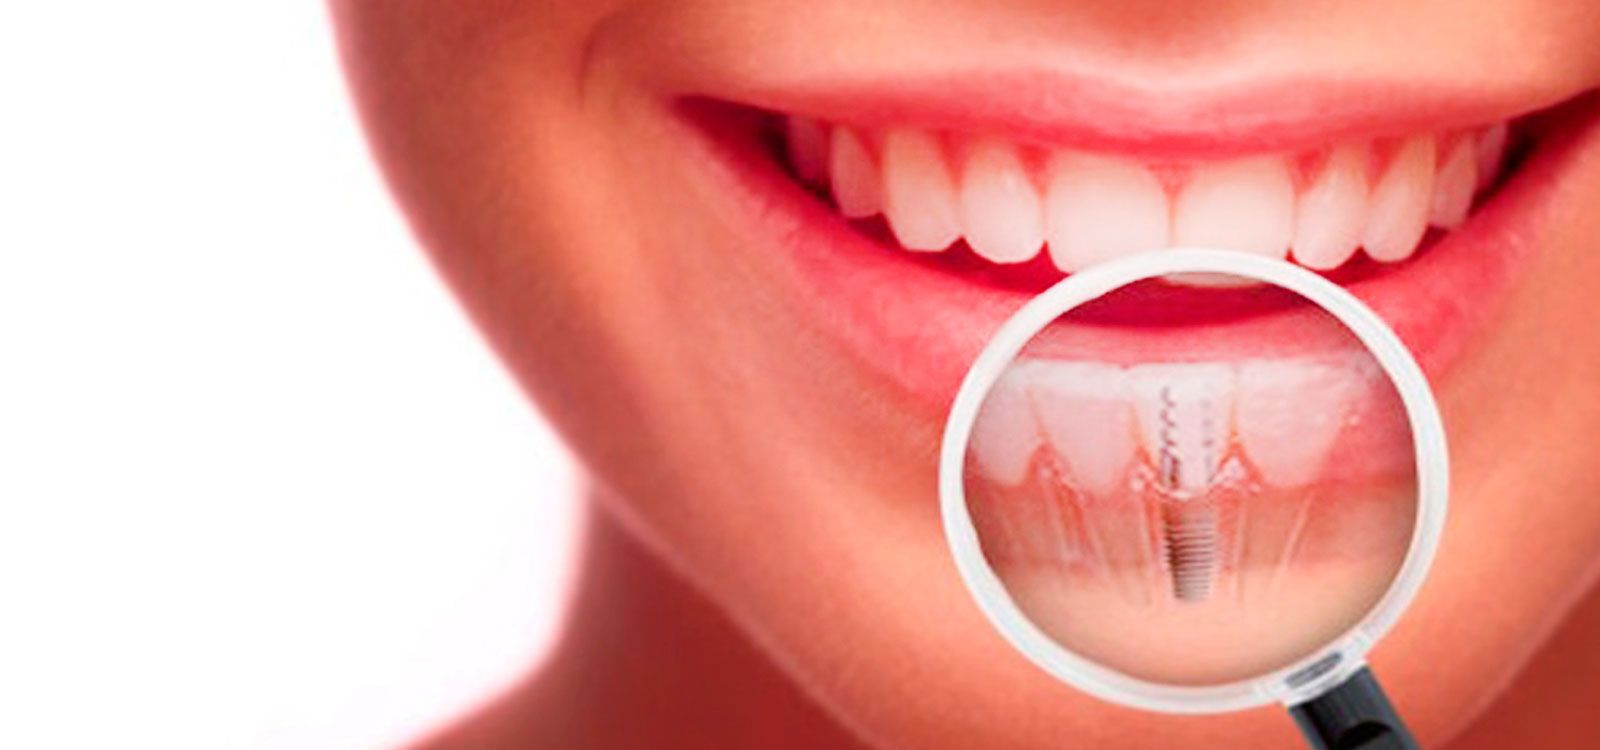 Los implantes dentales son fundamentales para evitar problemas de salud